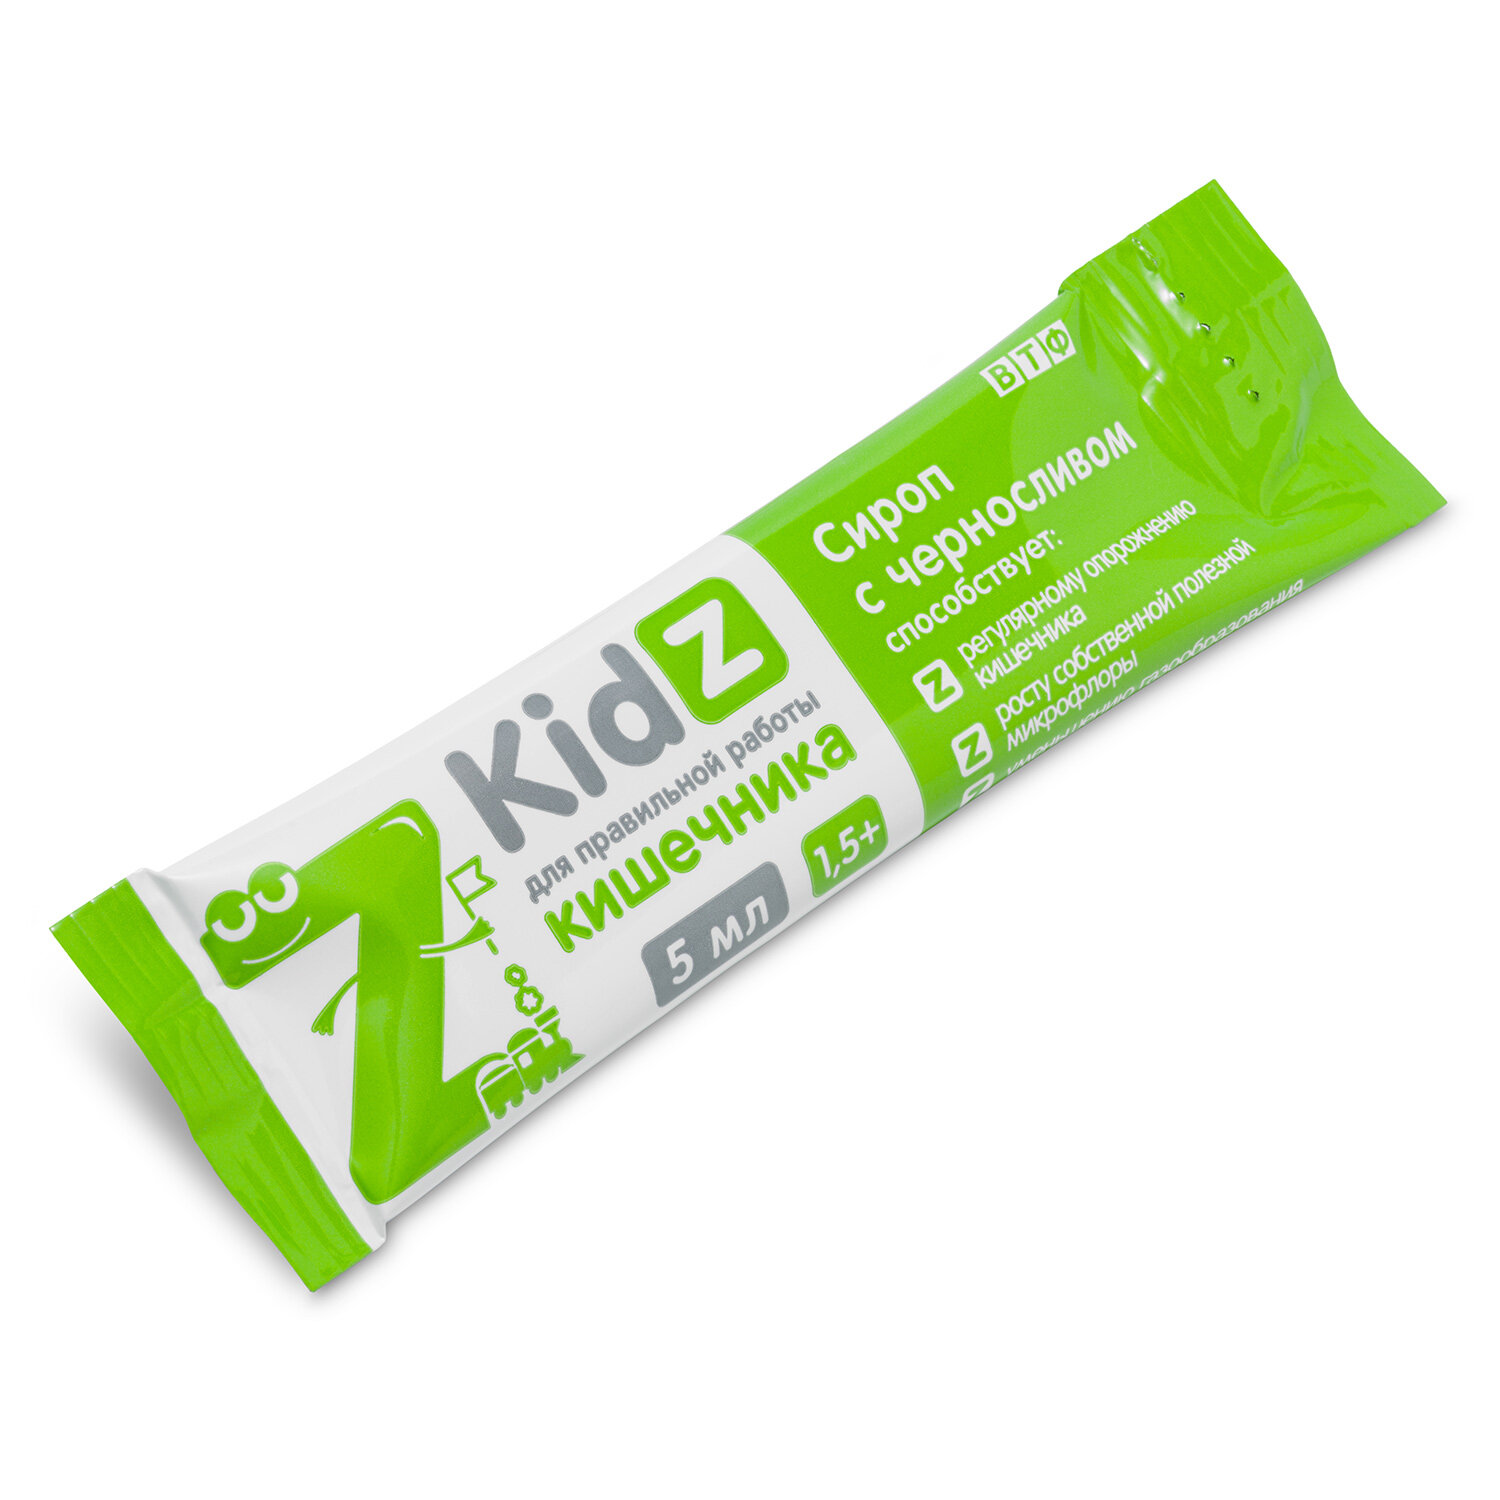 KidZ сироп с черносливом, для правильной работы кишечника , сироп в стиках, с 1,5 лет, 10 стиков по 5 мл.